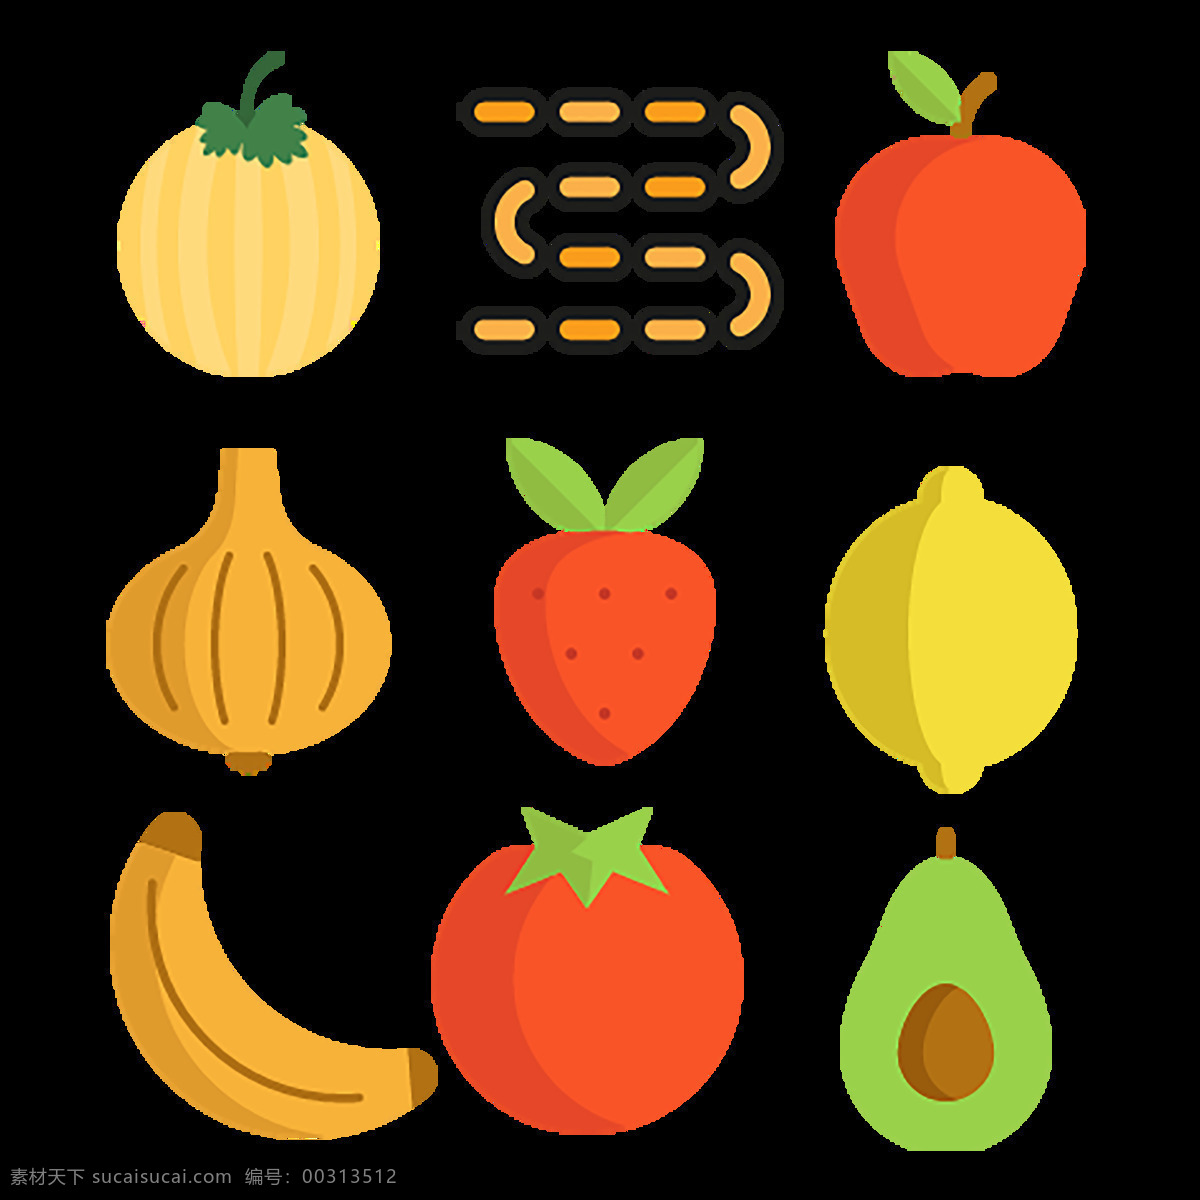 水果 食物 食品 icon 南瓜 香蕉 草莓 图标 小图标 工具图标 web图标 媒体 标识图标 文件 手机图标 手机按钮 网页素材